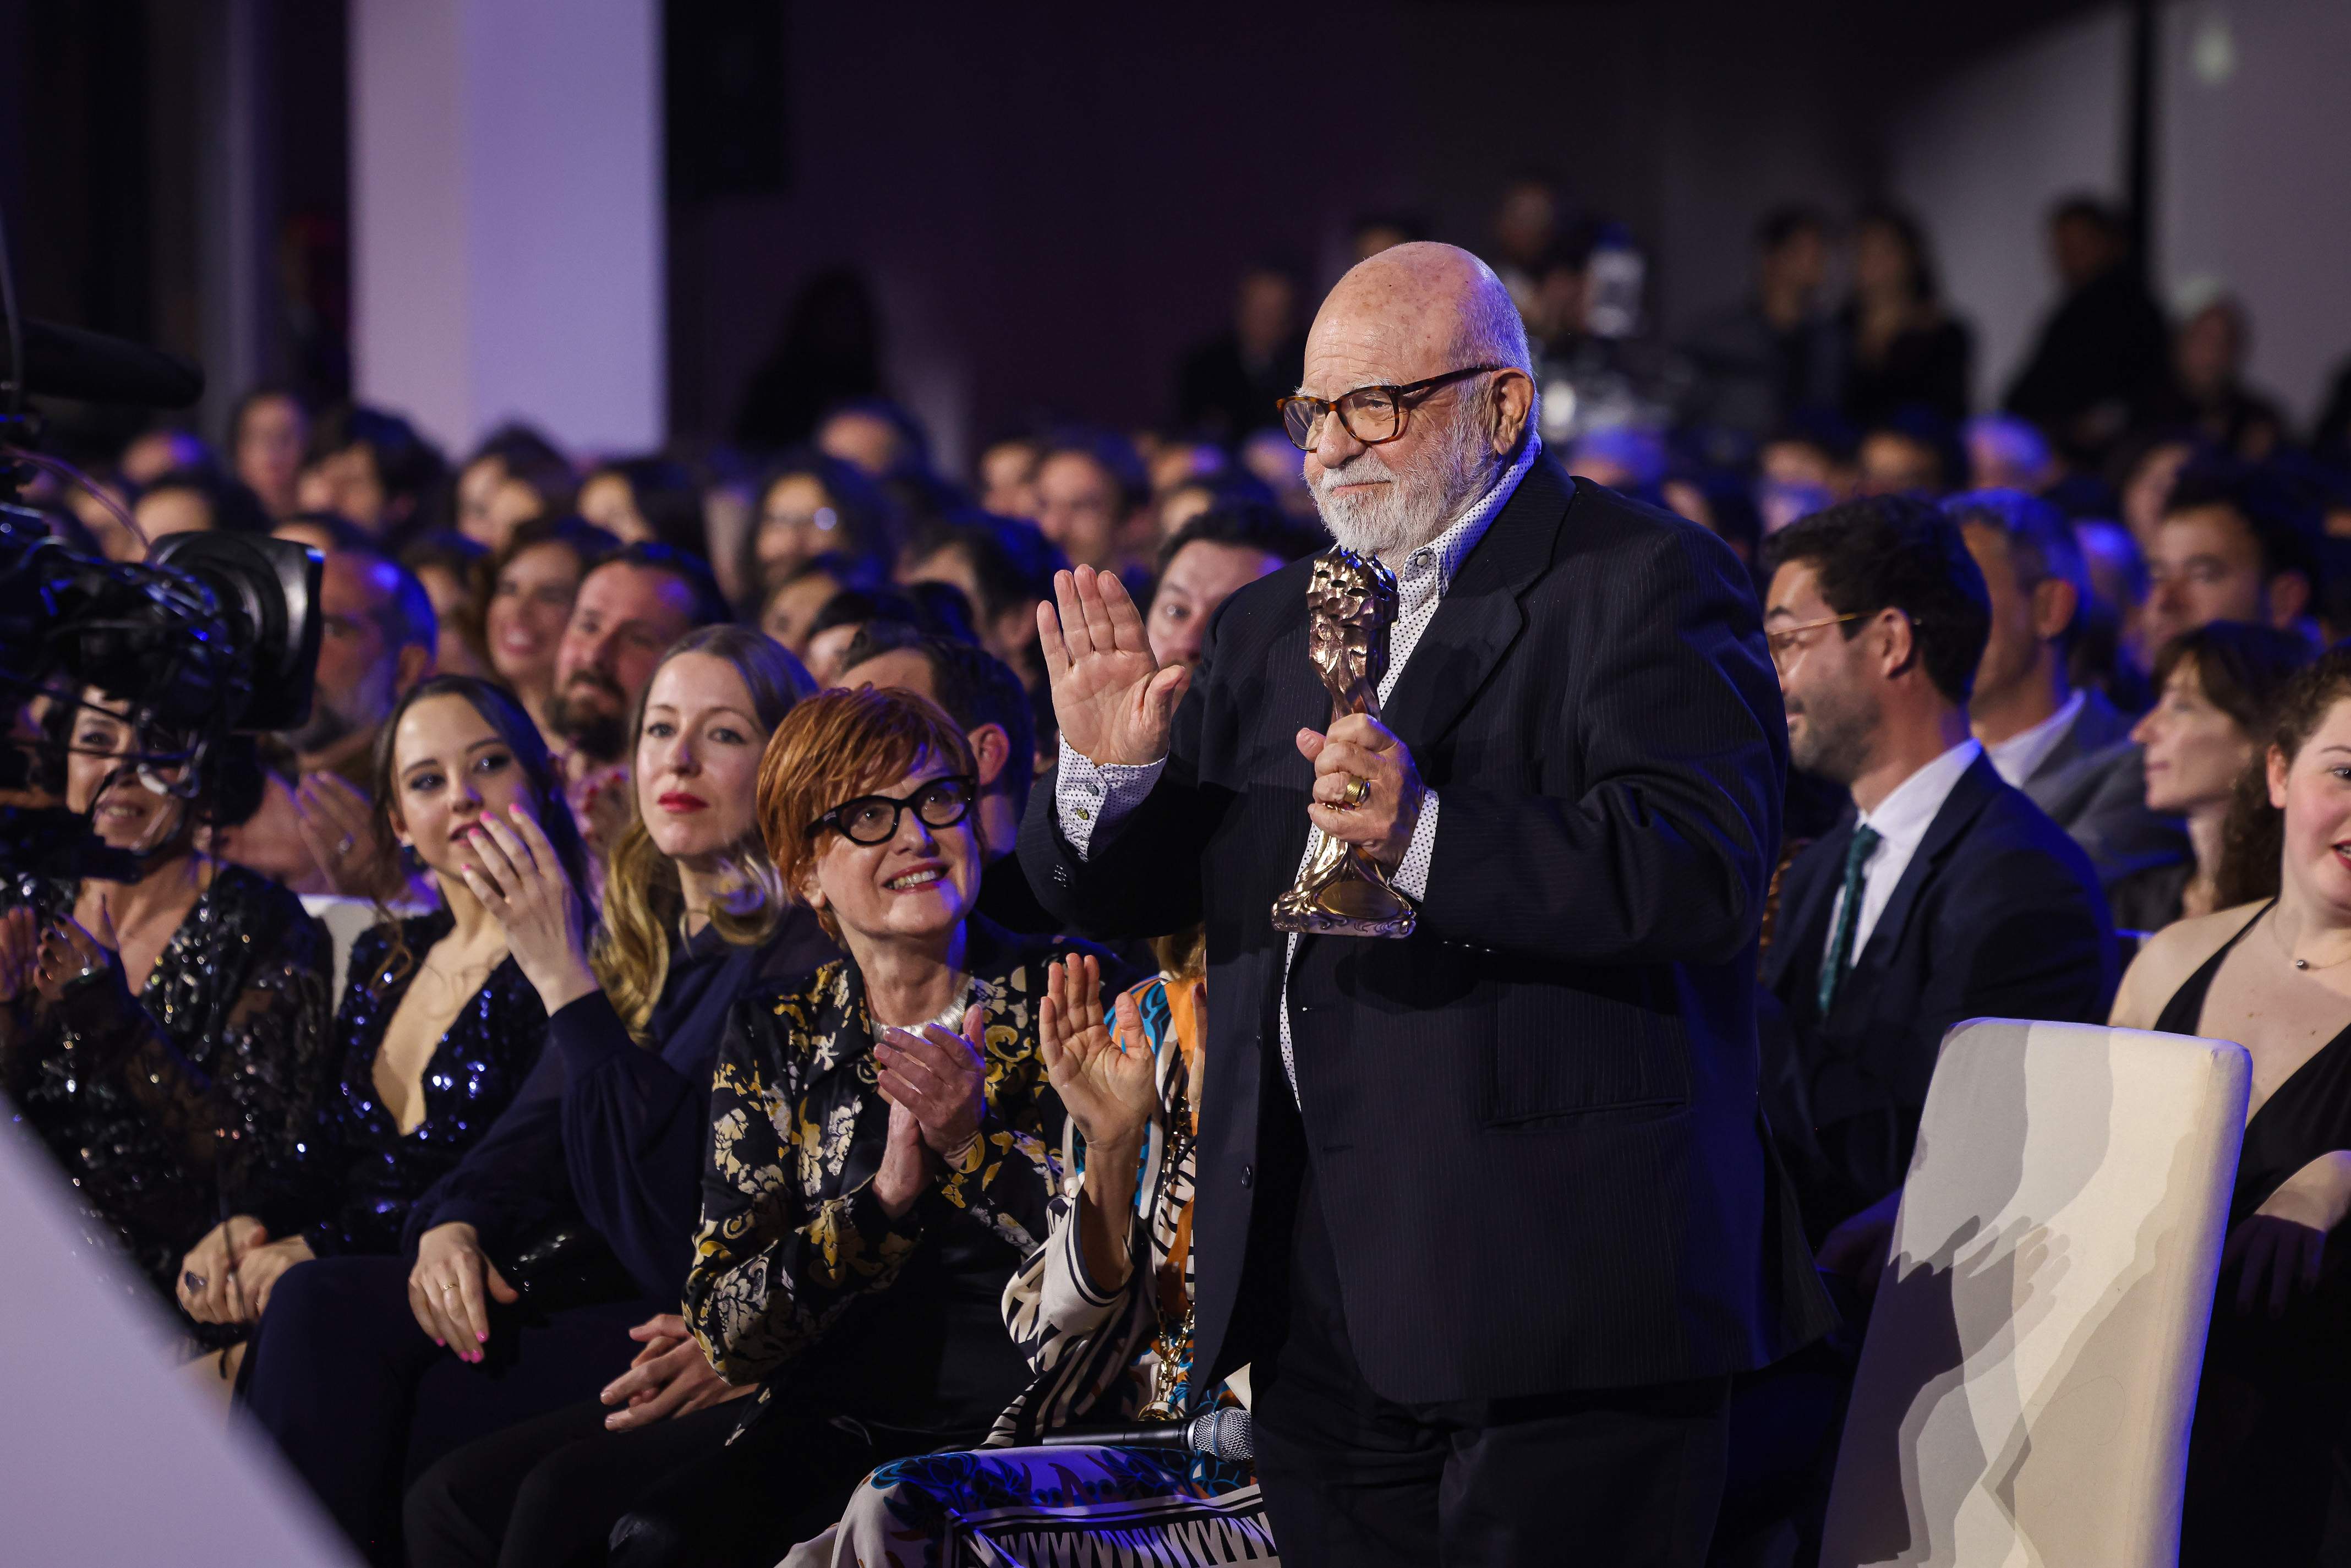 El periodista Jaume Figueras gana el Premio de Comunicación de la Academia de Cine